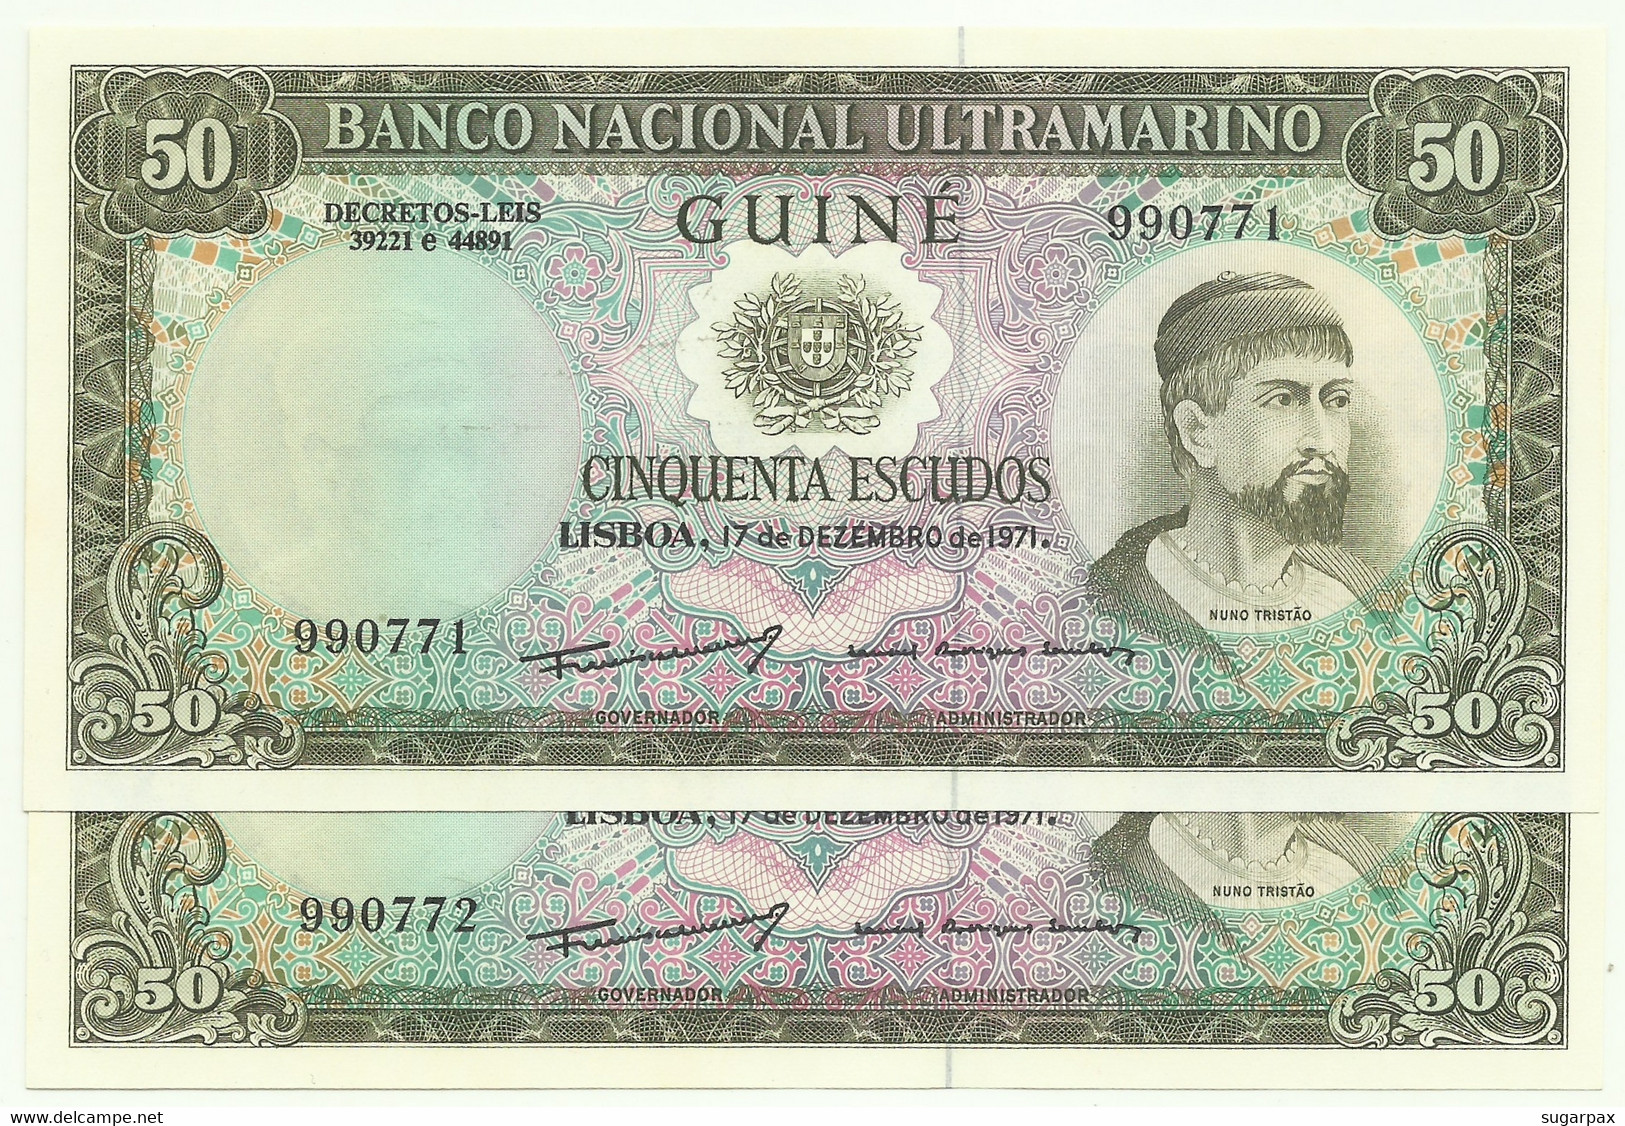 Guiné-Bissau - 2 X 50 Escudos Consecutive - 17.12.1971 - P 44 - Unc. - Sign Varieties - Nuno Tristão - PORTUGAL - Guinee-Bissau